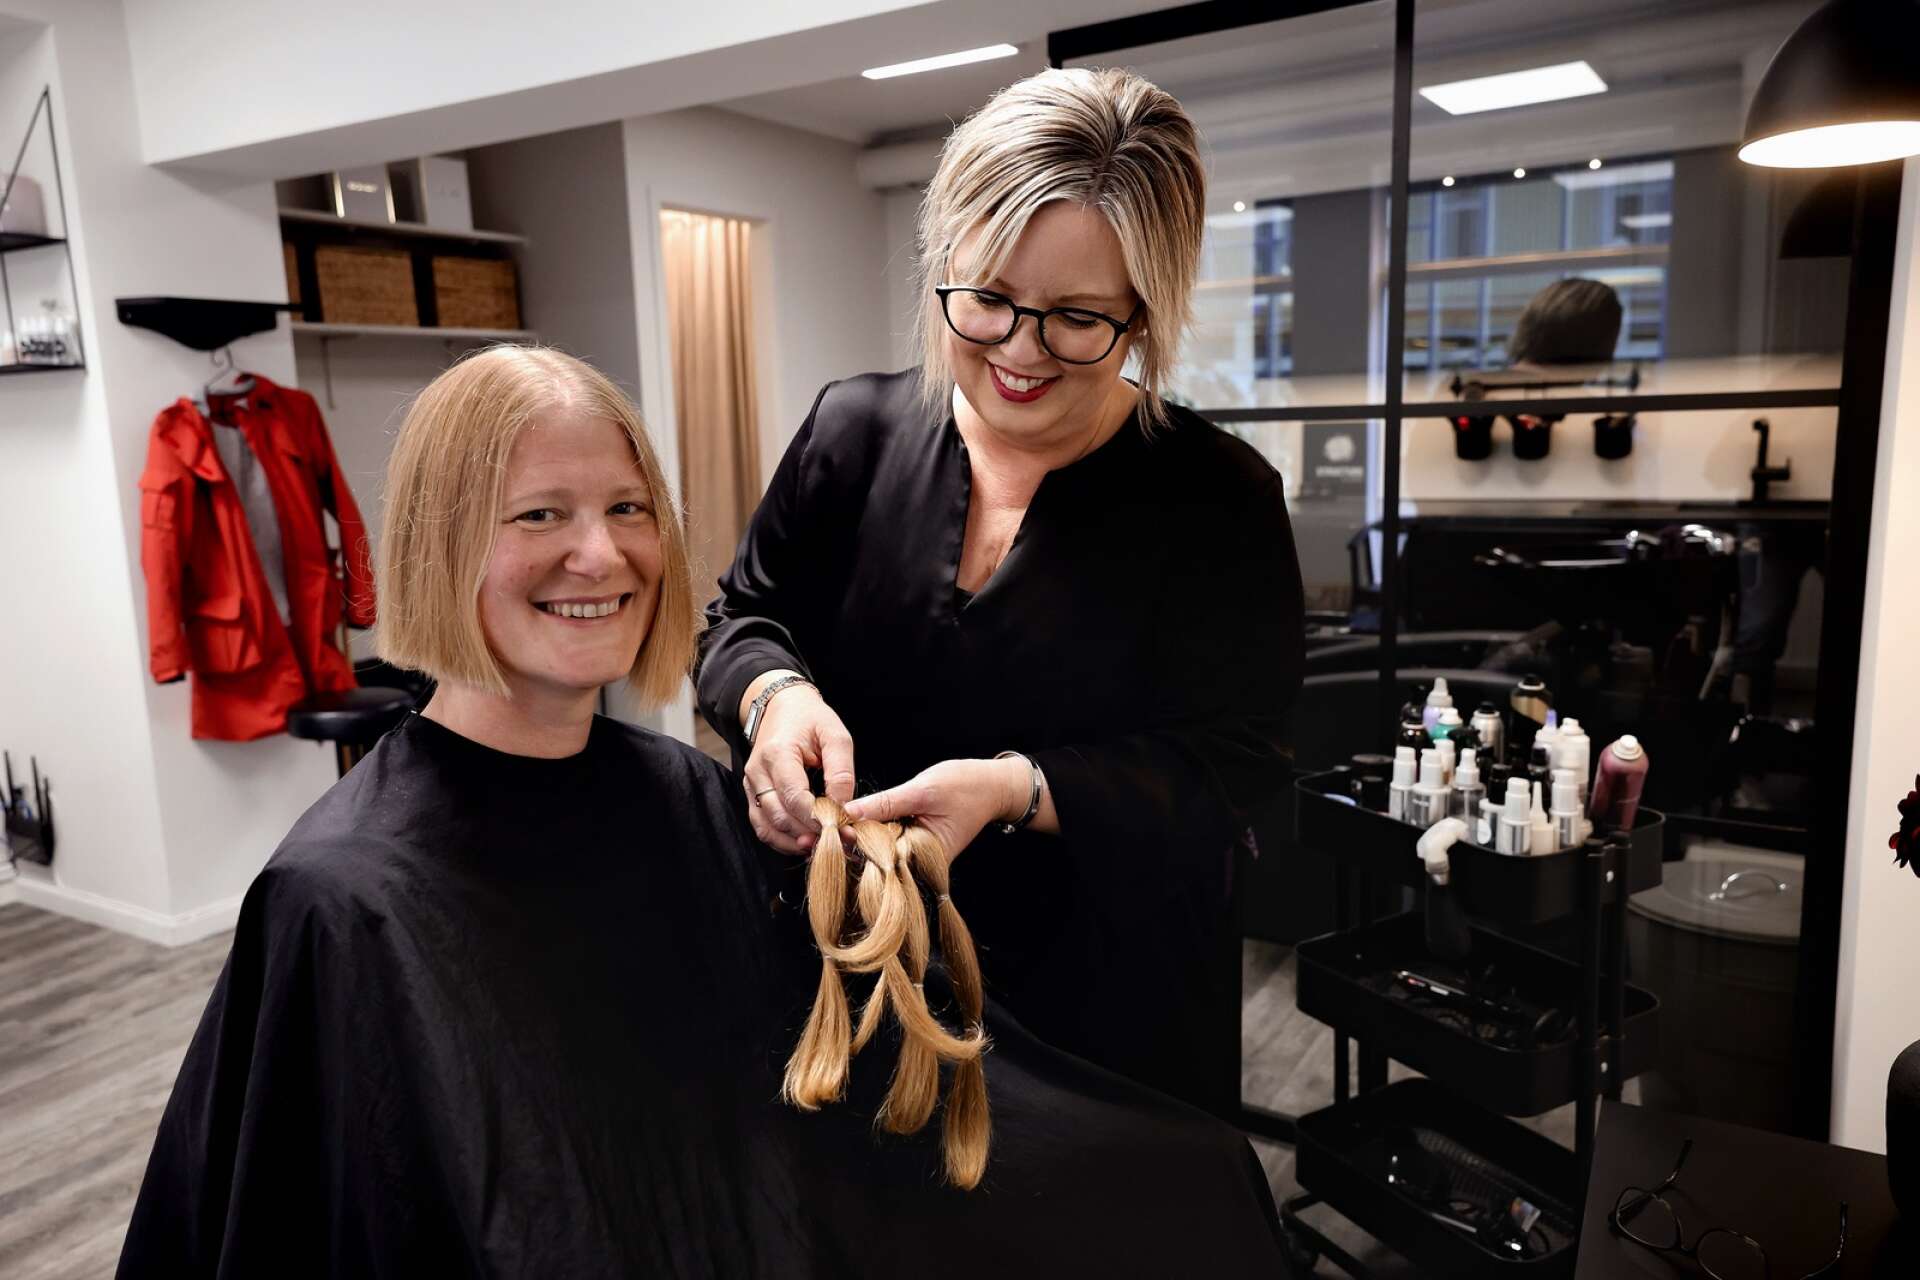 Matilda Andin från Lidköping har under de senaste tio åren donerar sitt hår till barn som tappat håret på grund av cancerbehandling. ”Om man kan bidra till att någon kan få känna sig hemma i sig själv och må bättre så tänker jag att det är värt att göra detta”, säger hon.